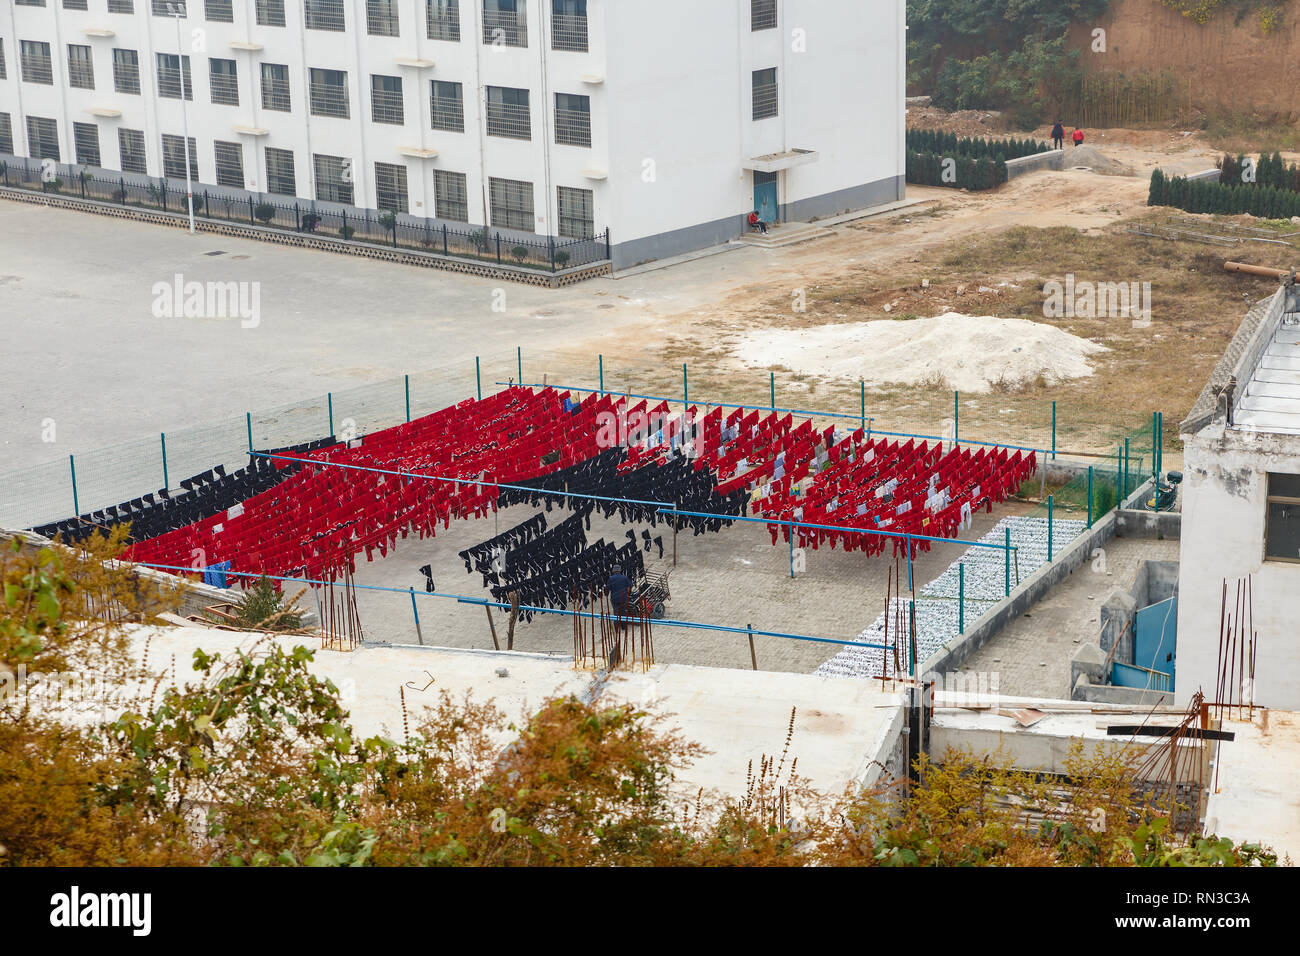 Dengfeng, China - 17. Oktober 2018: Die einheitliche Ausbildung der Schüler der Kampfkünste Schule ist auf einem Seil in der Straße nach der Wäsche getrocknet. Shaolin Tempel. Stockfoto